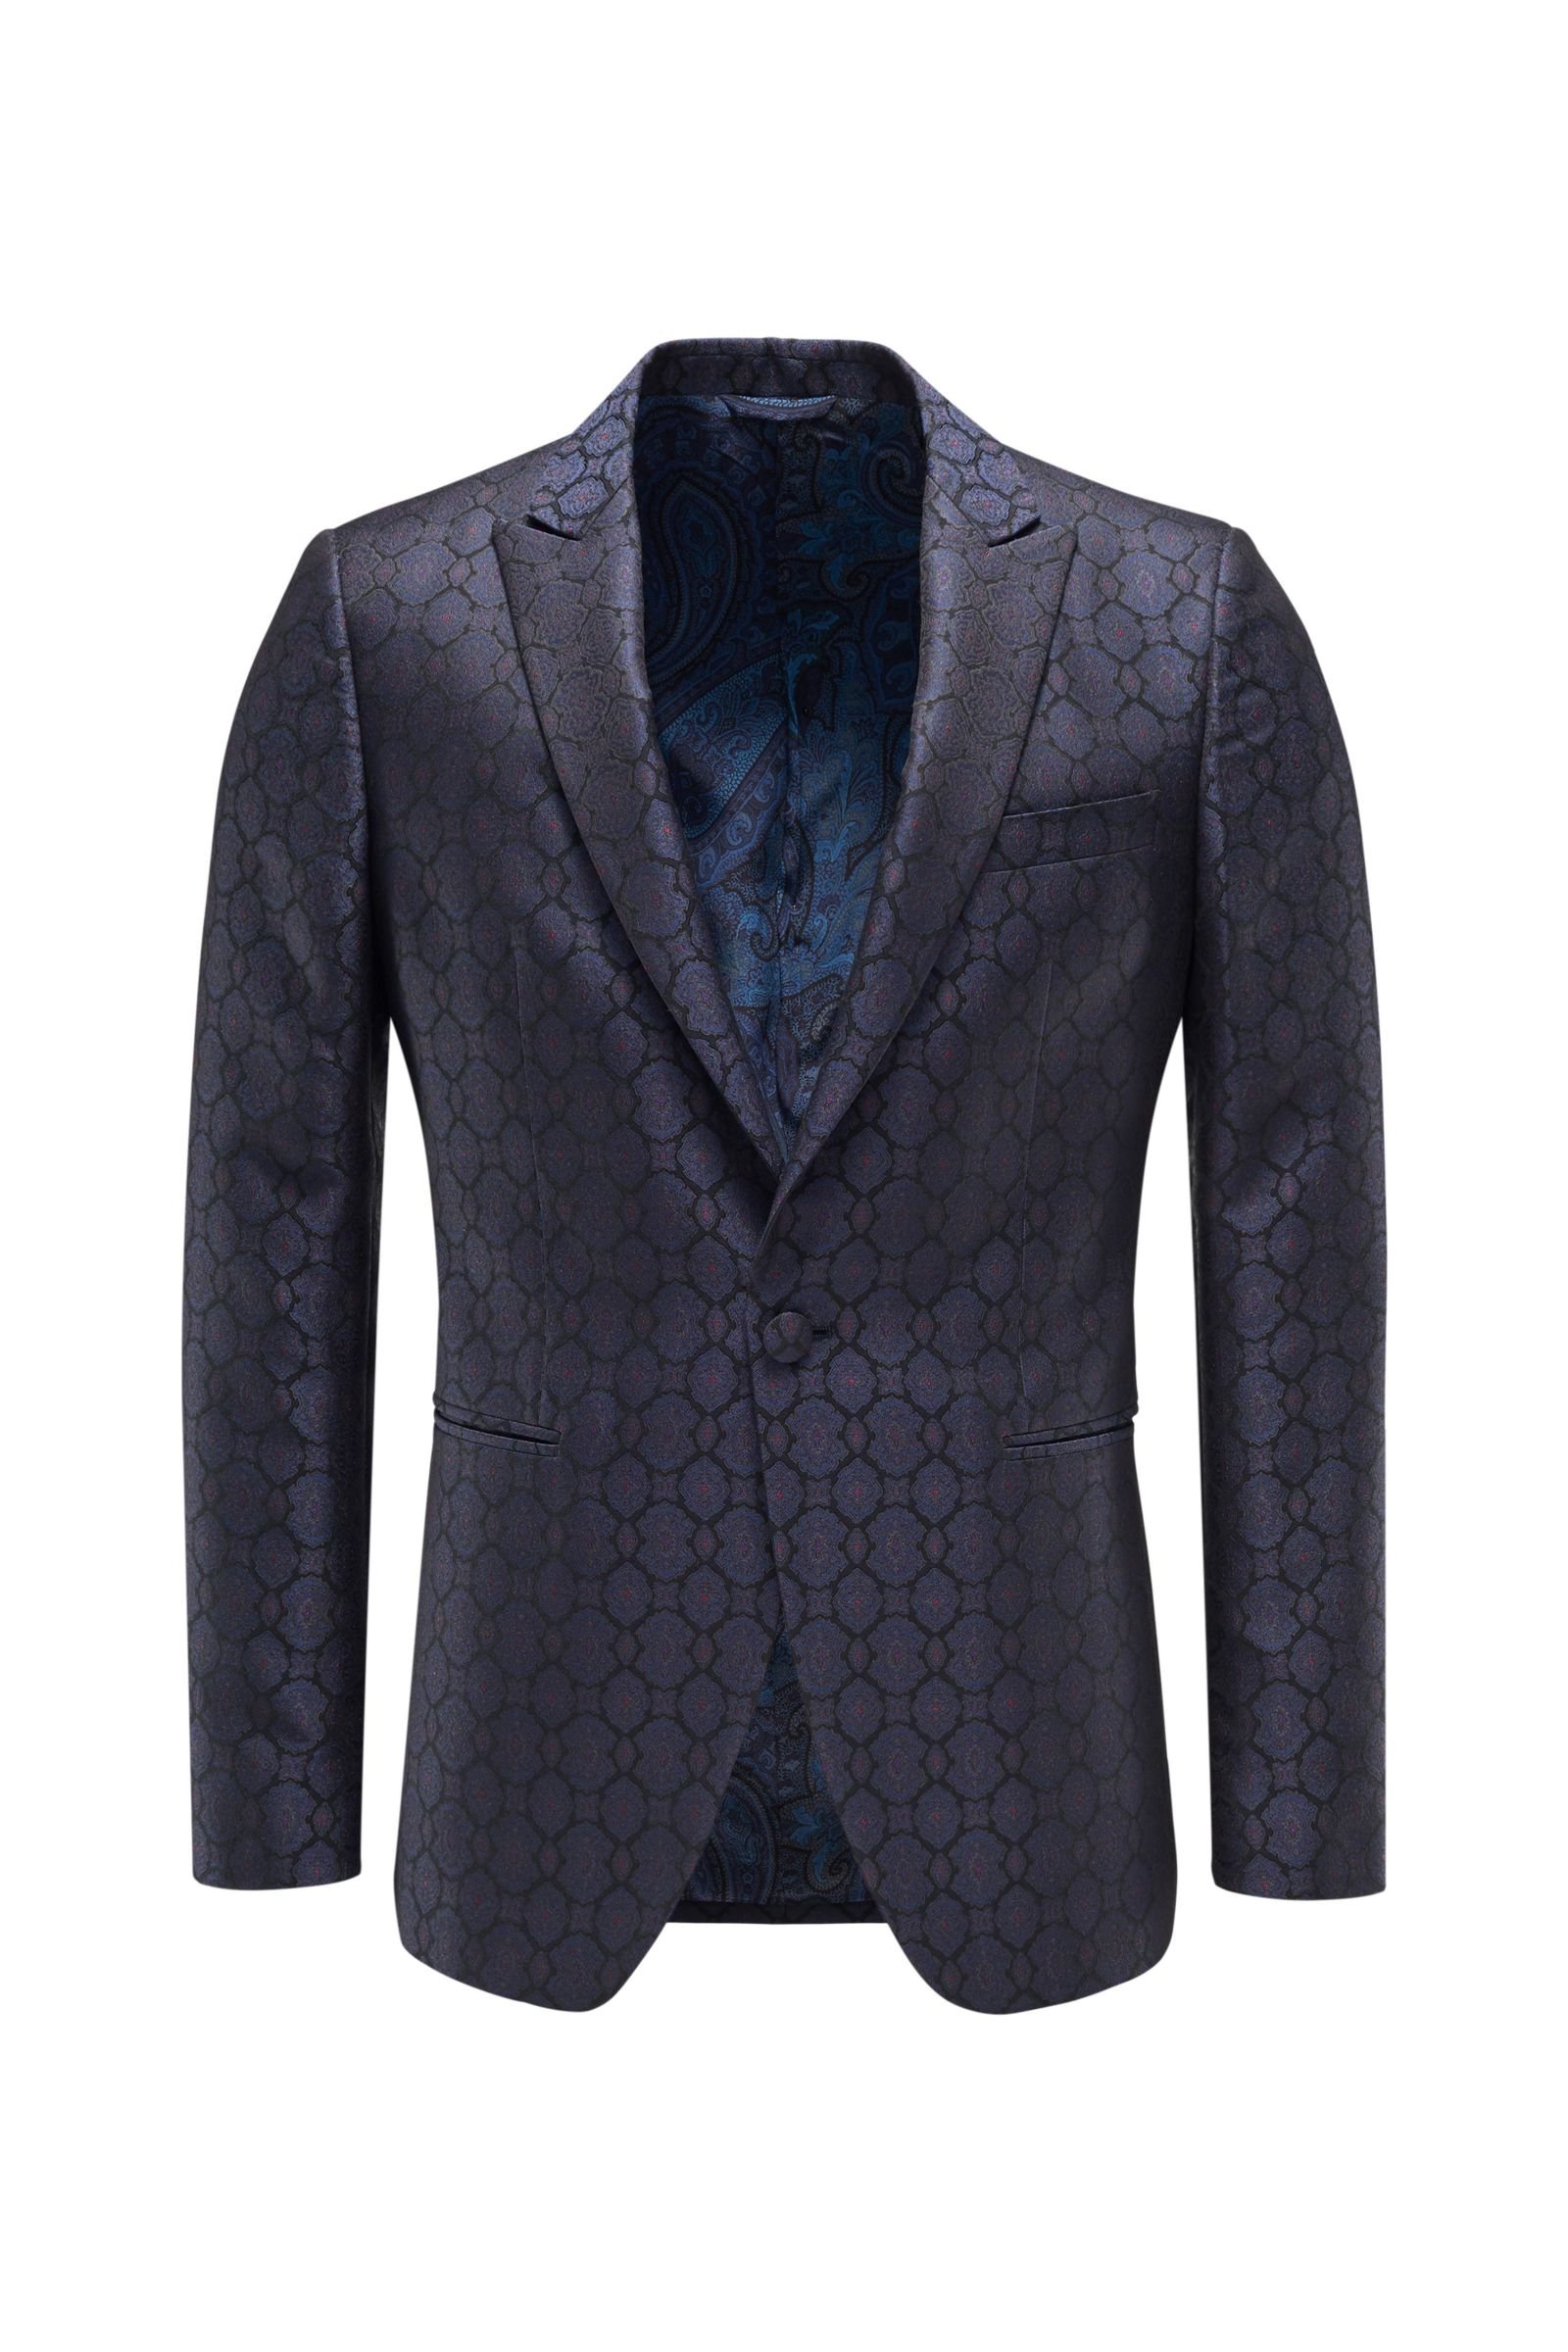 Tuxedo smart-casual jacket dark blue patterned